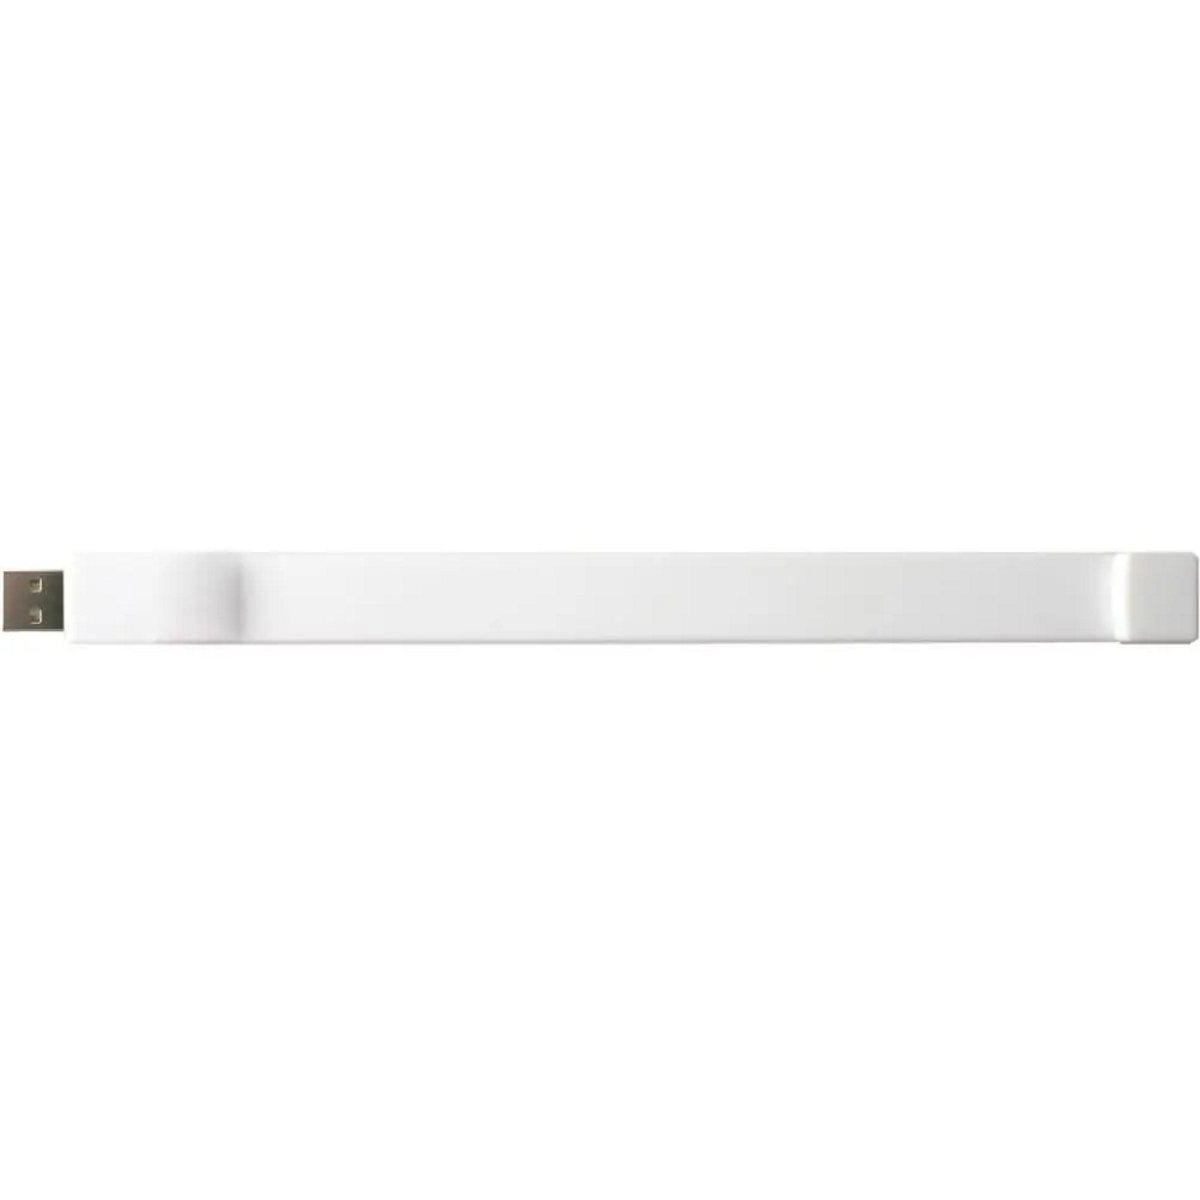 USB GERMANY 16 GB) USB-Stick (Weiß, Silicon-Armband